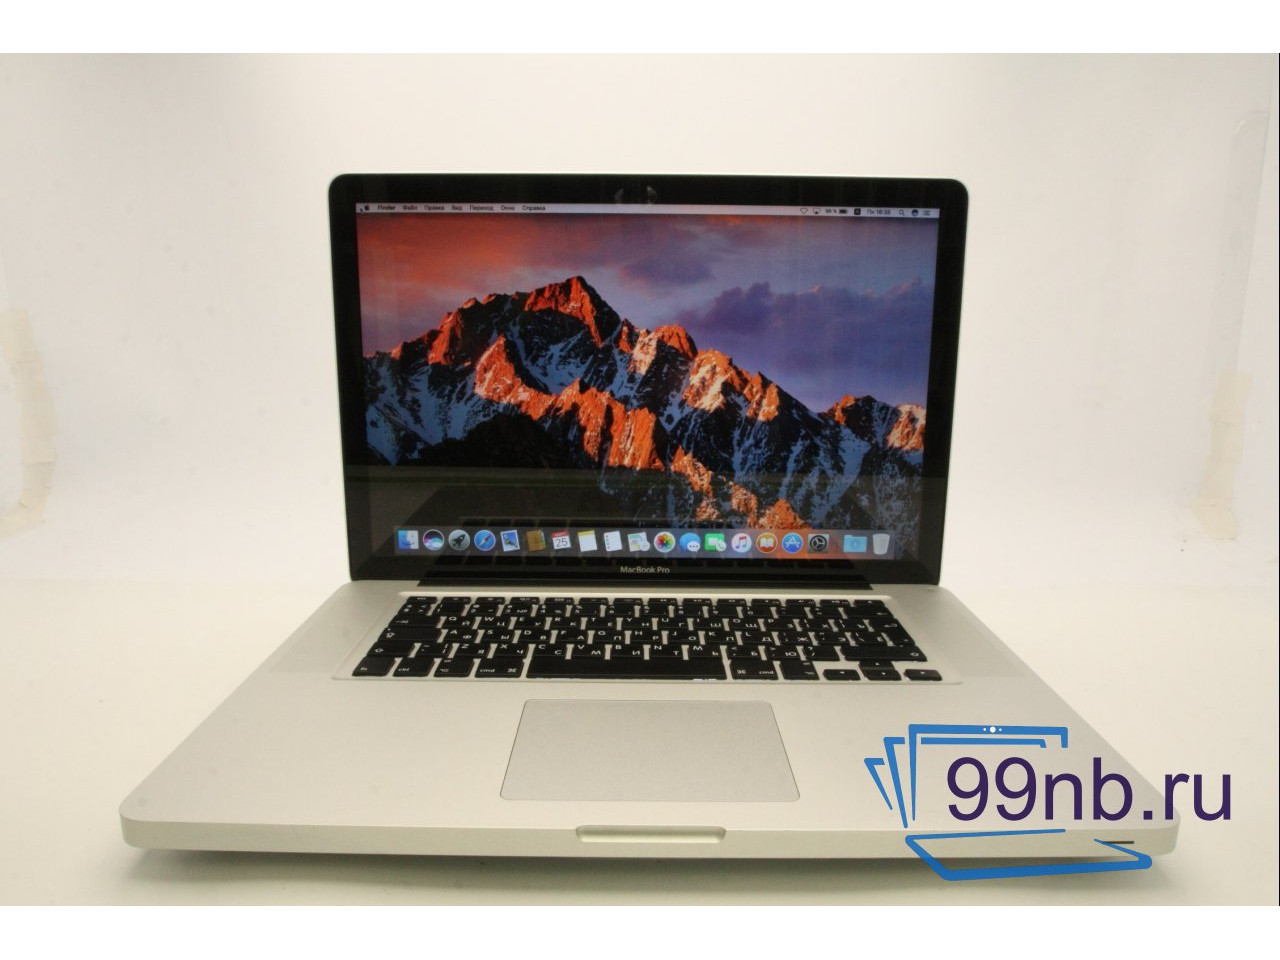 Macbook macbook pro 15 A1286